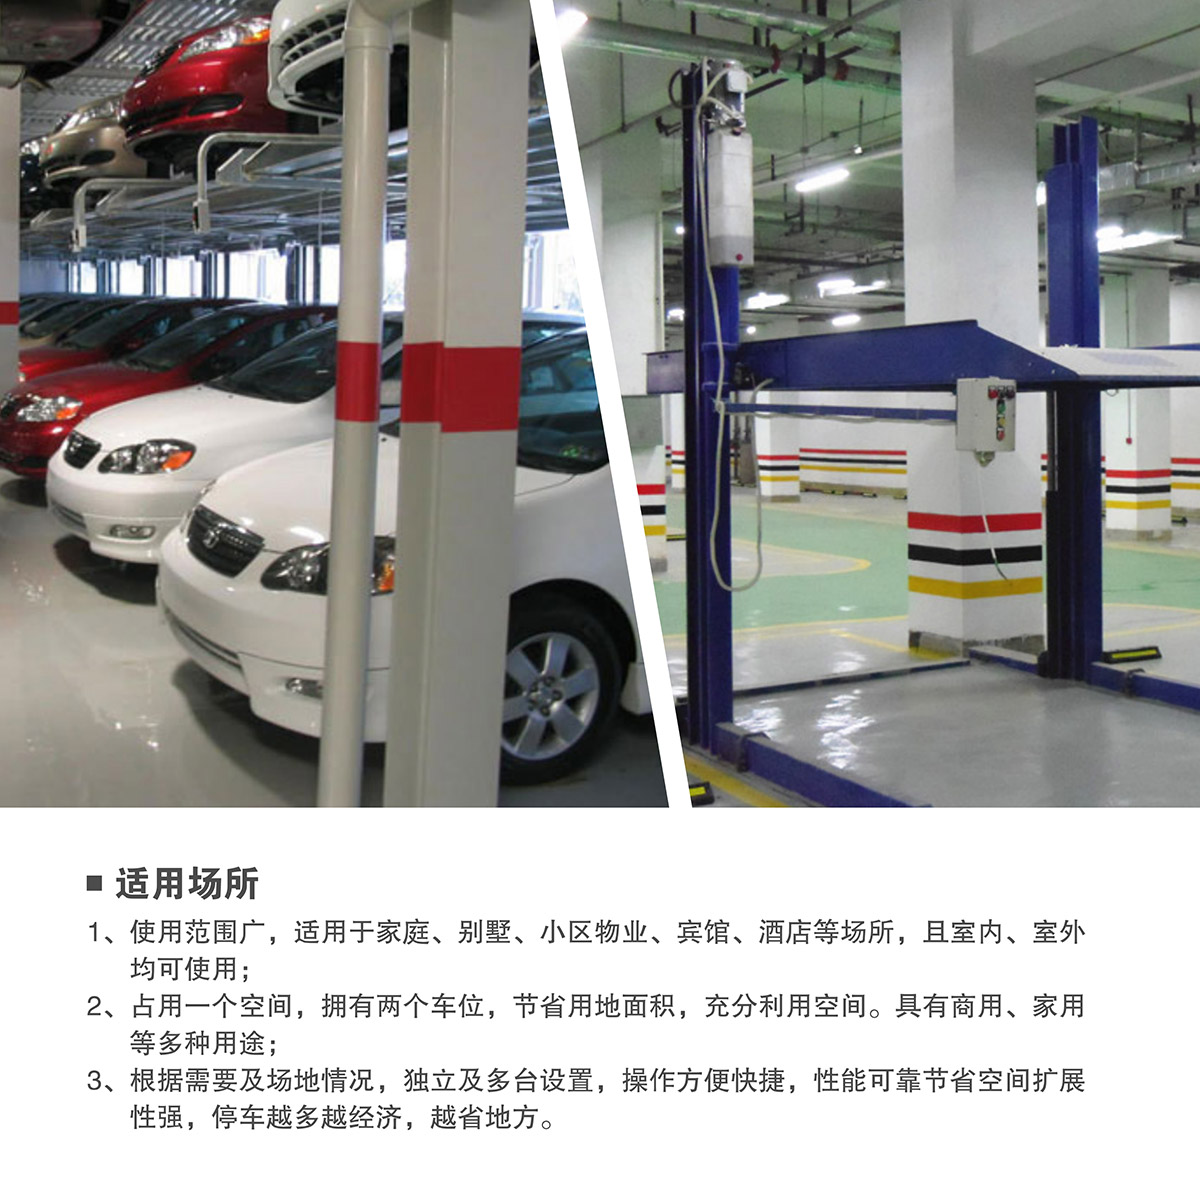 机械车库租赁两柱简易升降机械停车设备适用场所.jpg